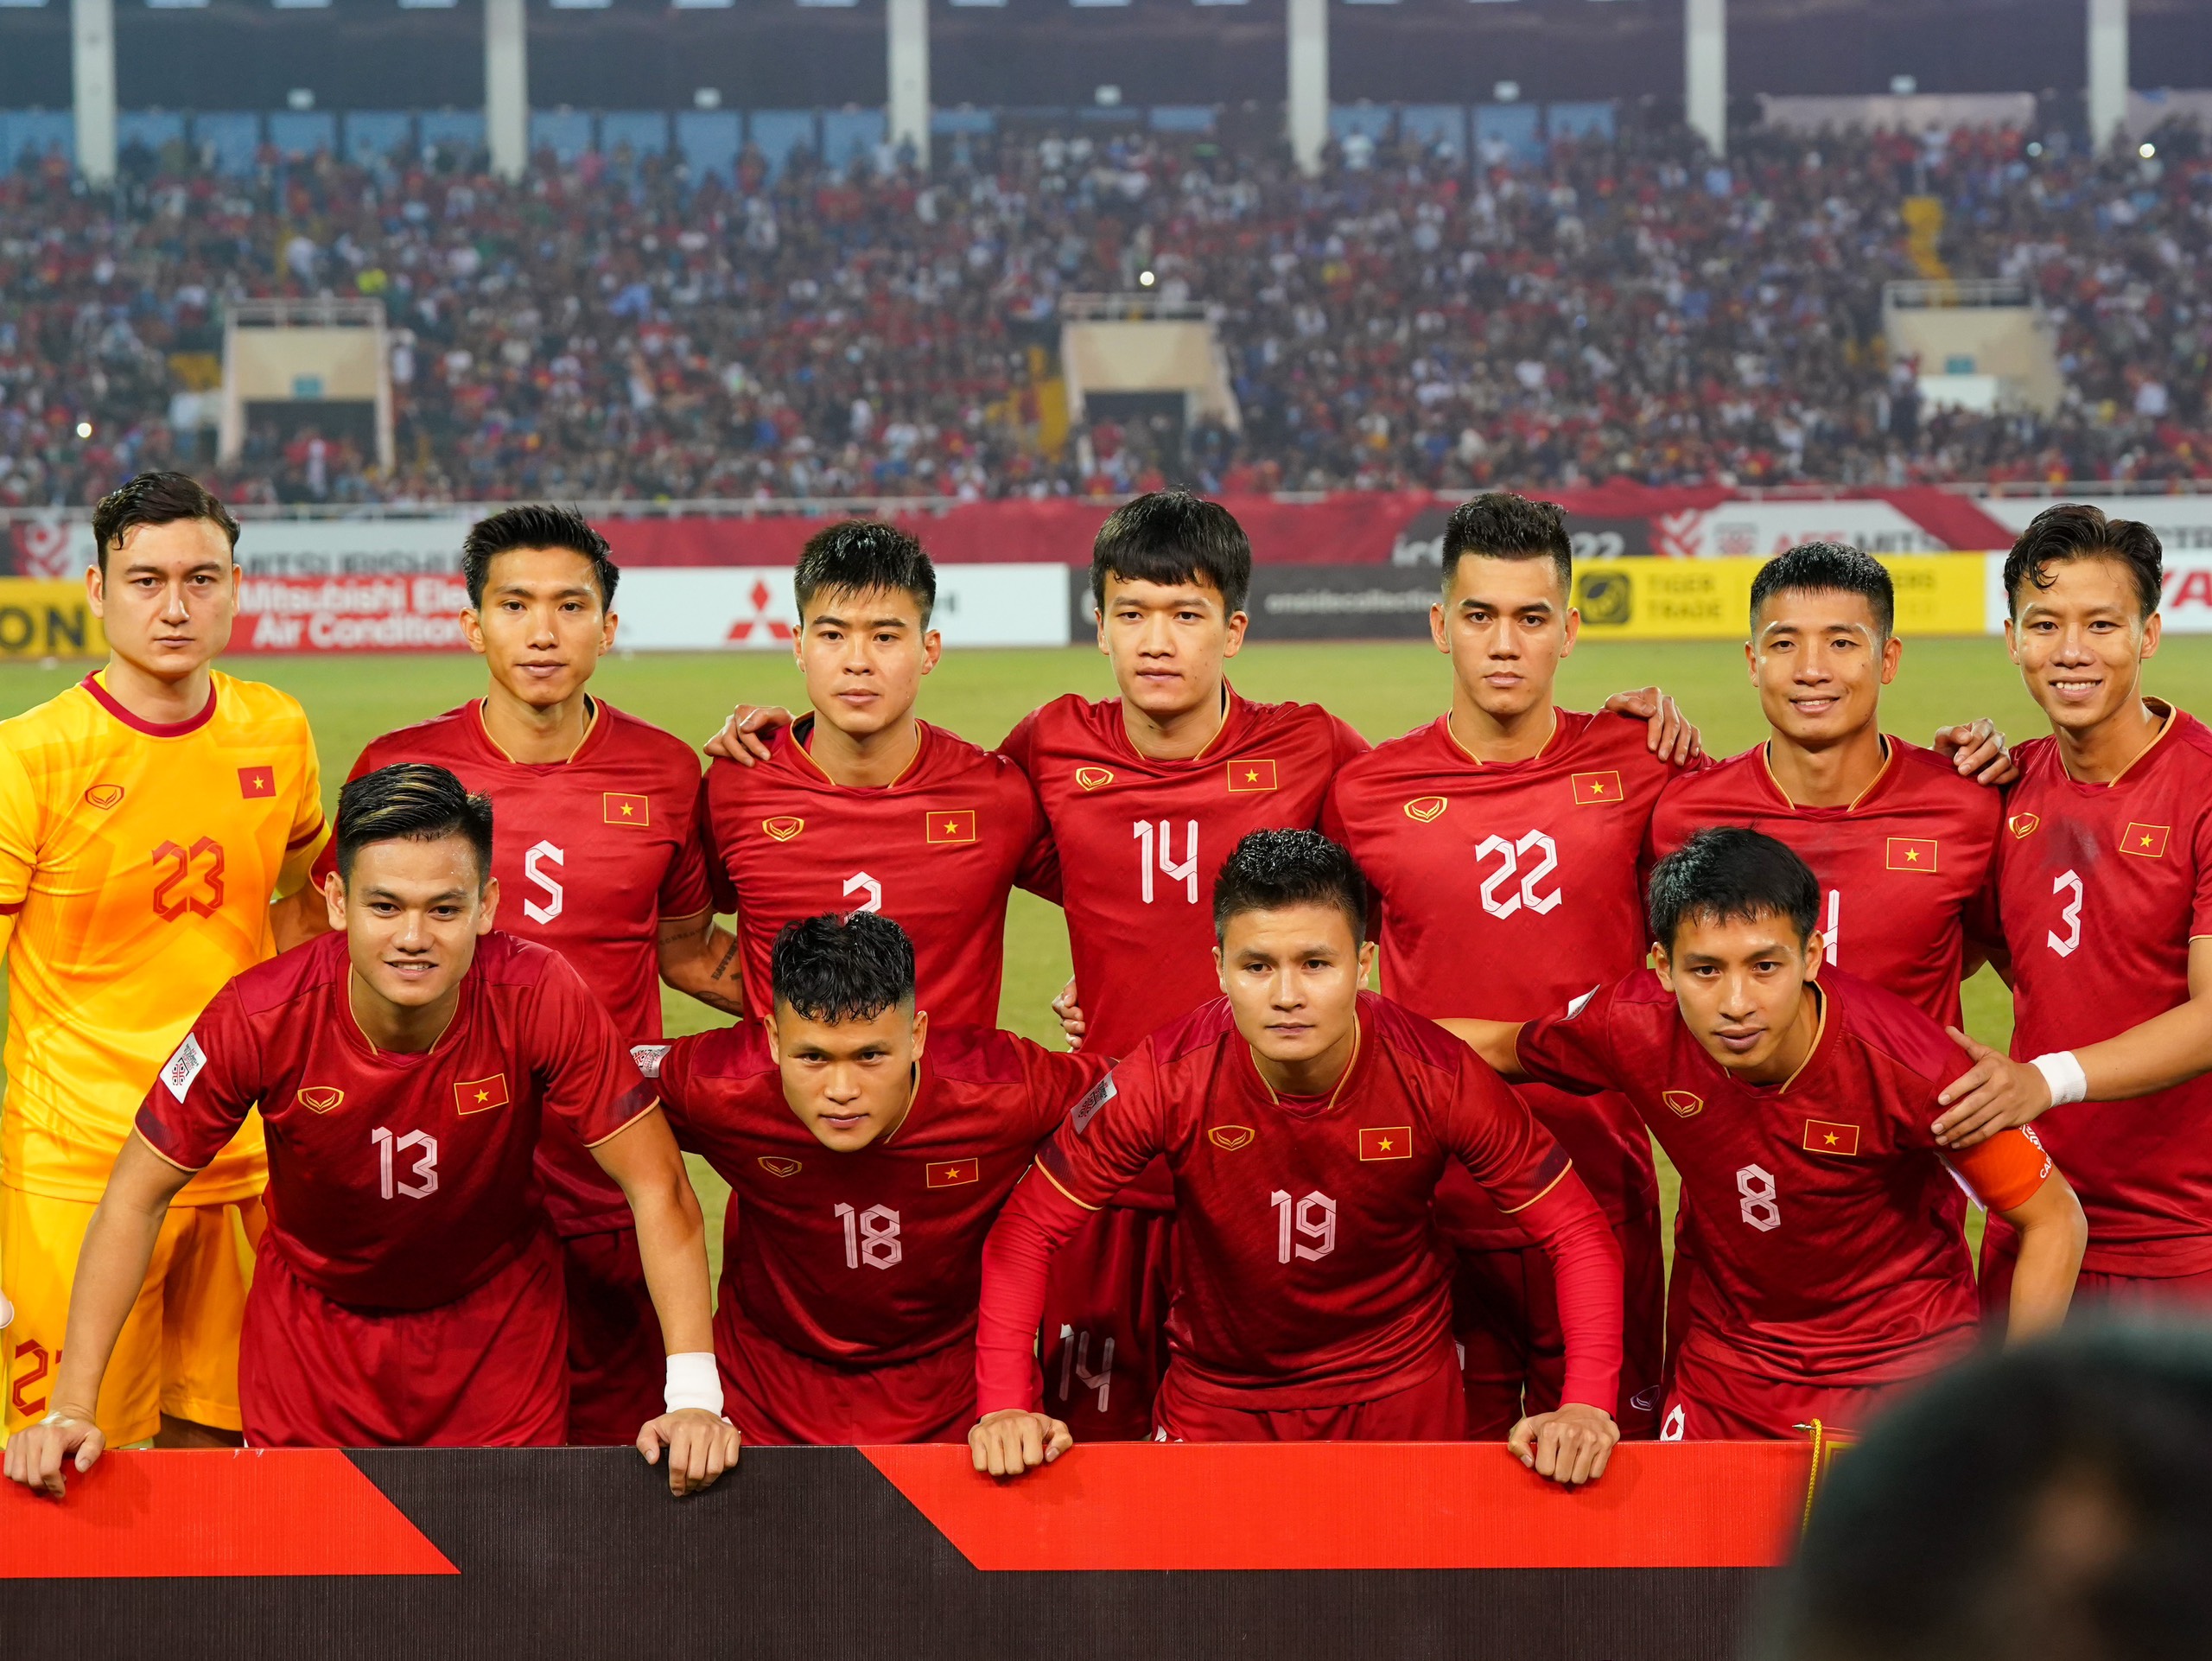 Thua chung kết AFF Cup 2022, tuyển Việt Nam nhận thưởng hơn 7 tỷ đồng